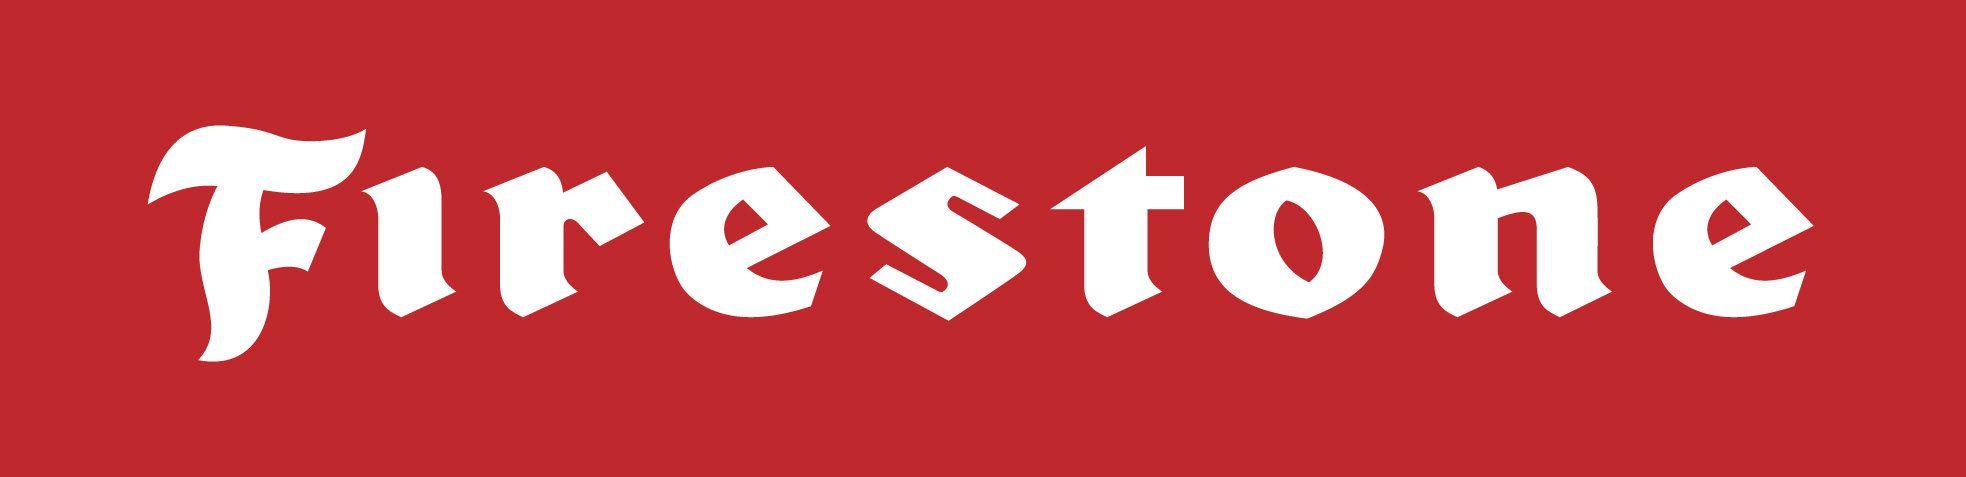 Firestone F Shield Logo - Firestone logo - Fonts In Use